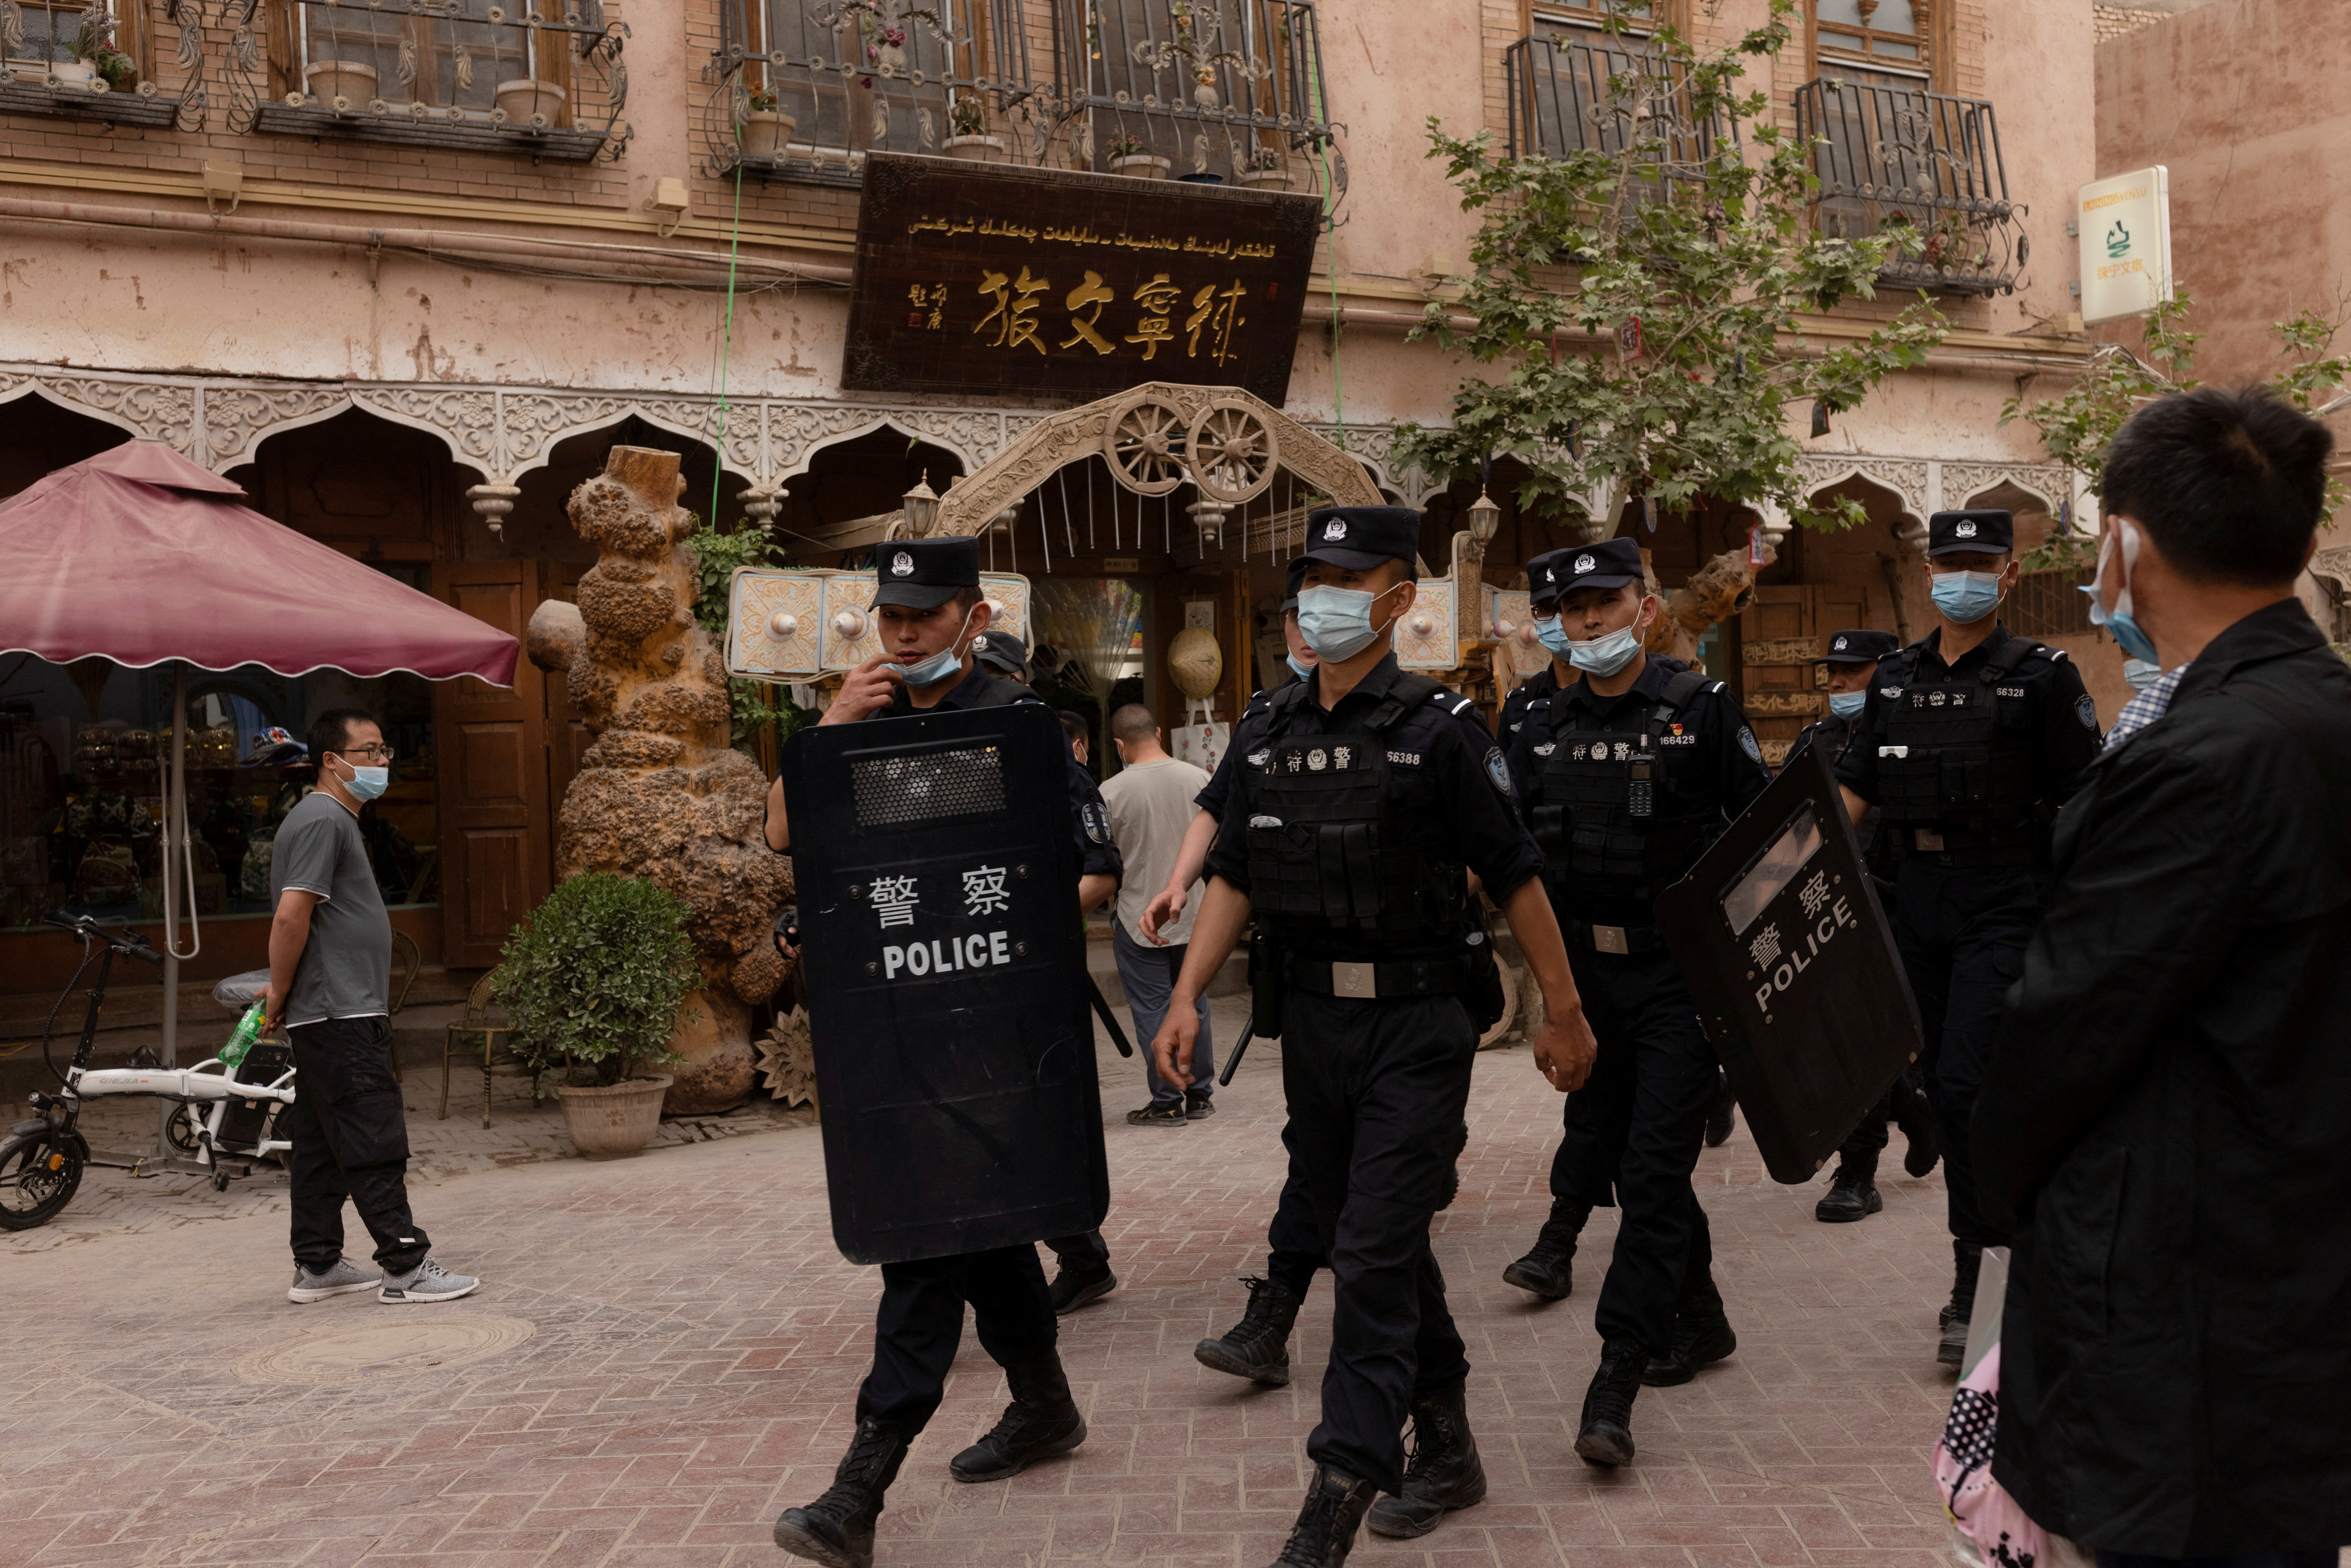 La policía del régimen chino ha montado "comisarias" propias en en el extranjero para "convencer" a ciudadanos chinos de regresar al país (REUTERS/Thomas Peter/File Photo)